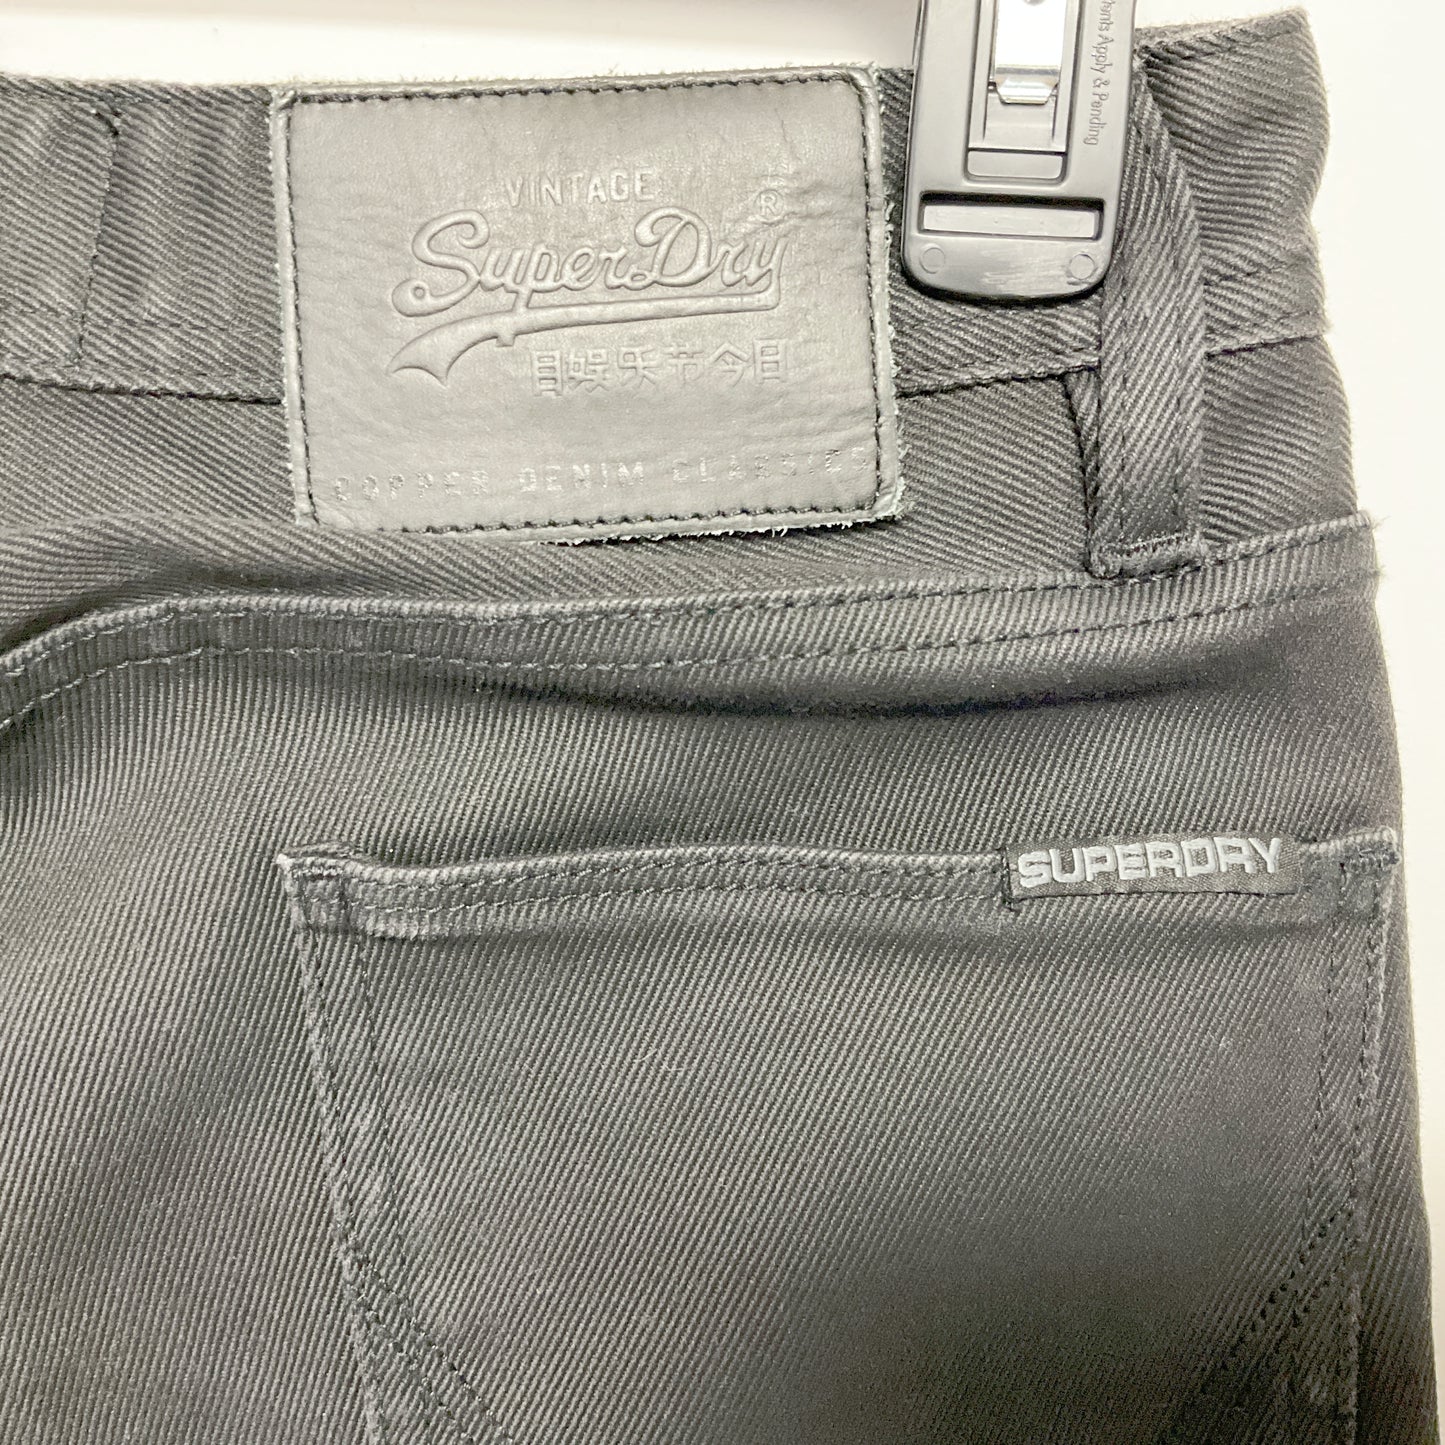 SUPERDRY -  Men Corporal Slim Fit Jeans - Size W28 L32